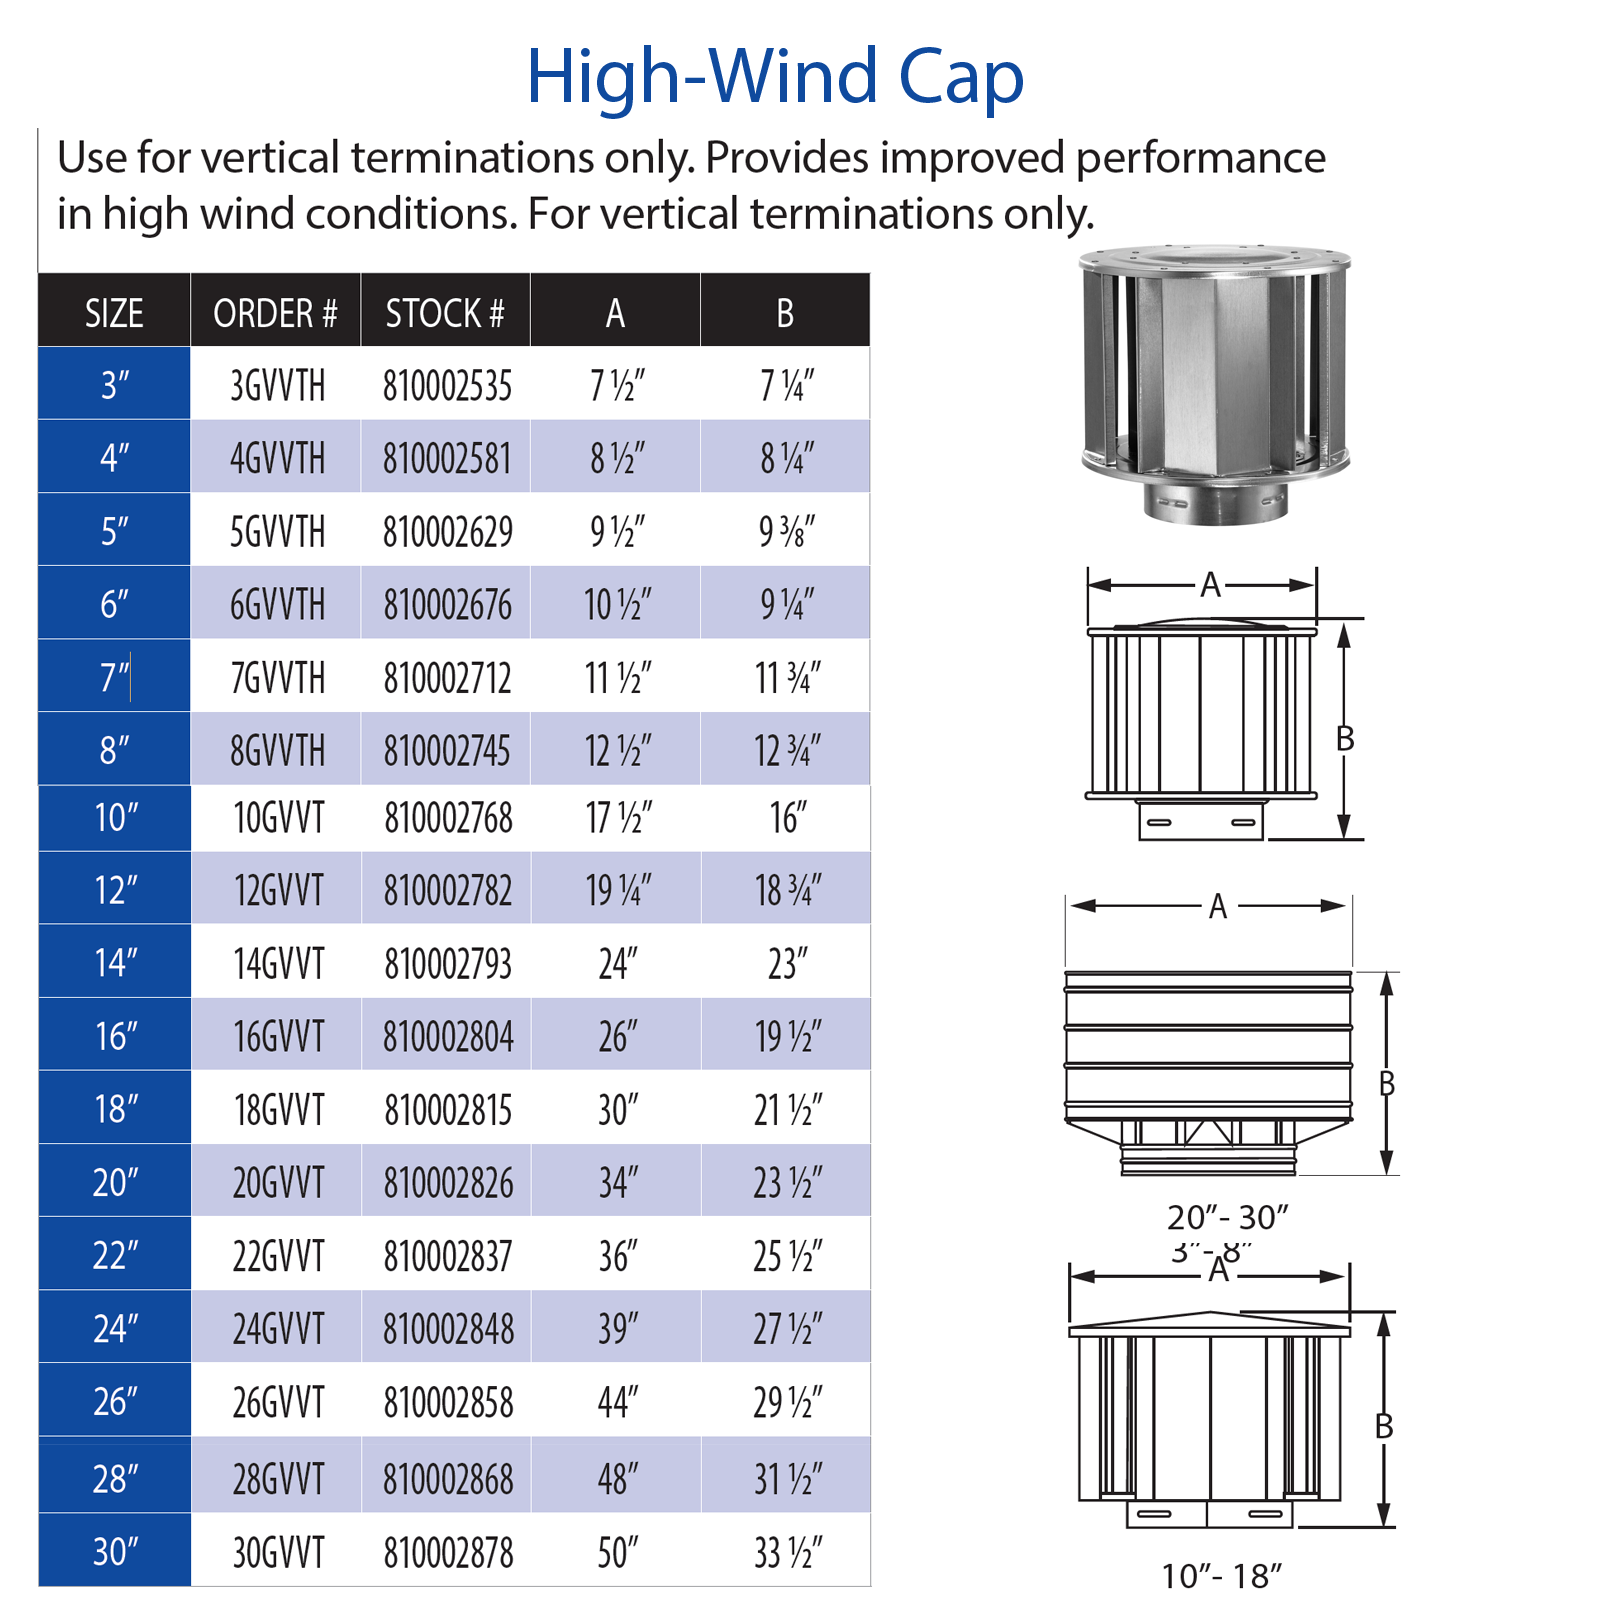 DuraVent Type B High-Wind Cap | 6GVVTH